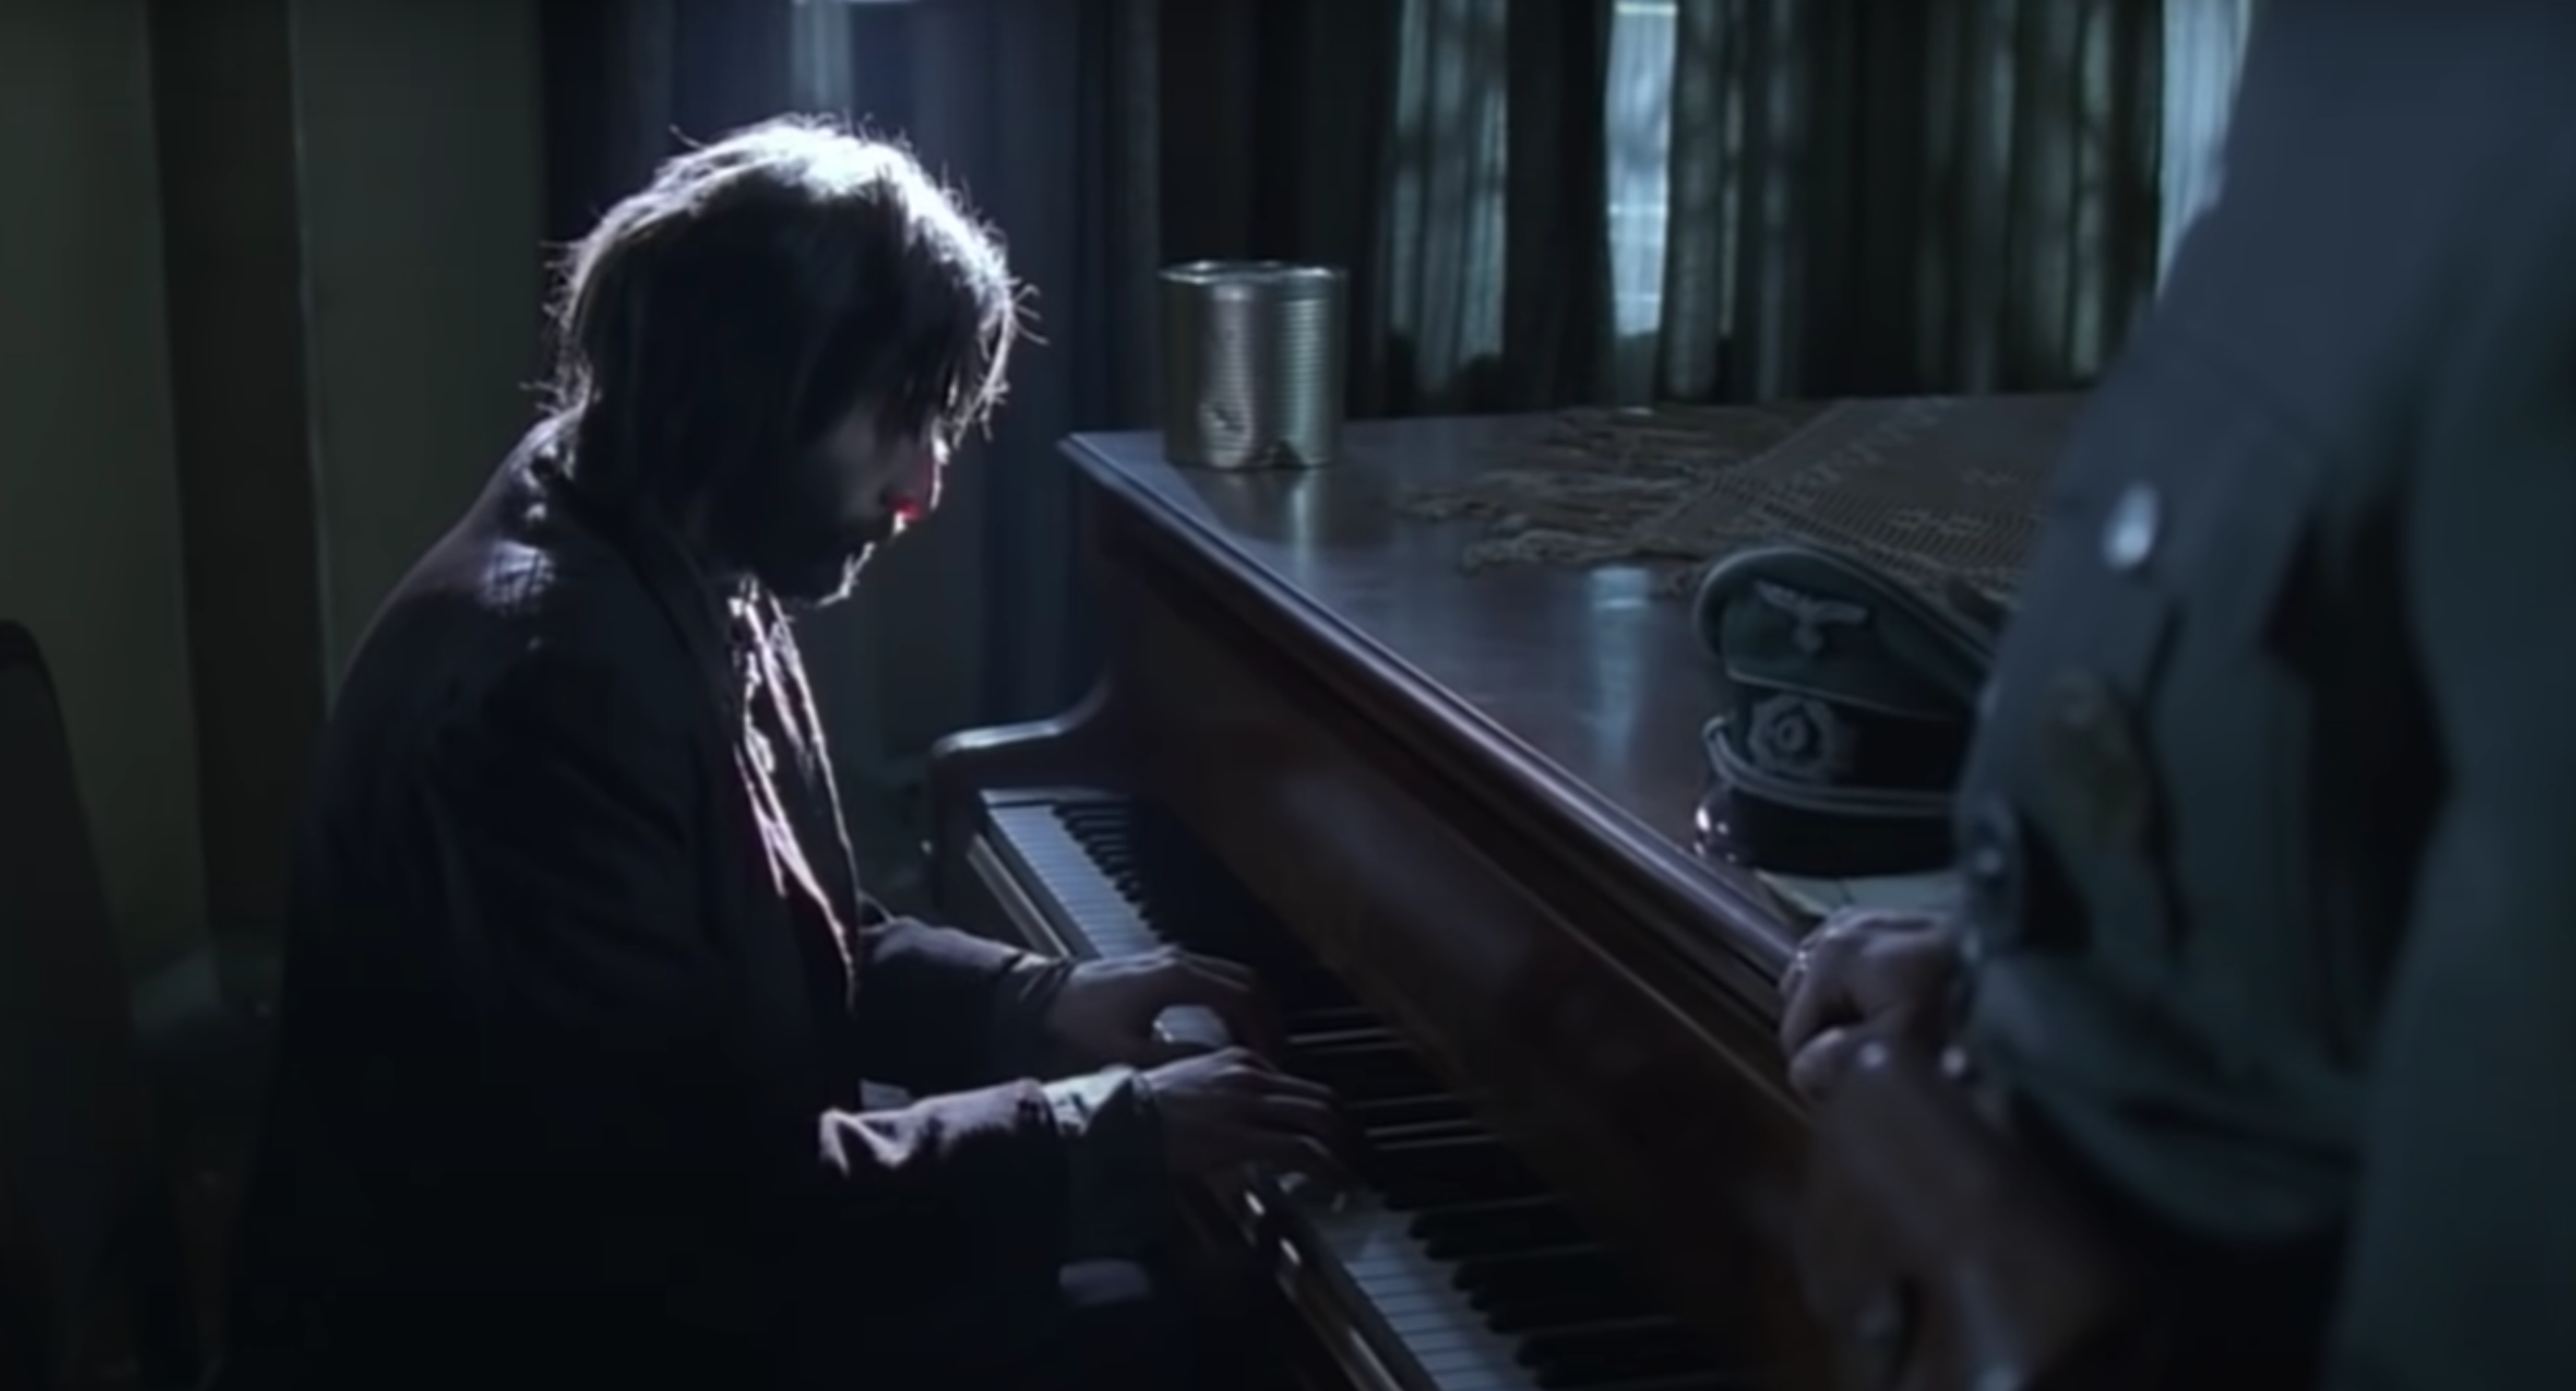 Le pianiste, Arte : découvrez celui qui a inspiré ce film - Télé Star